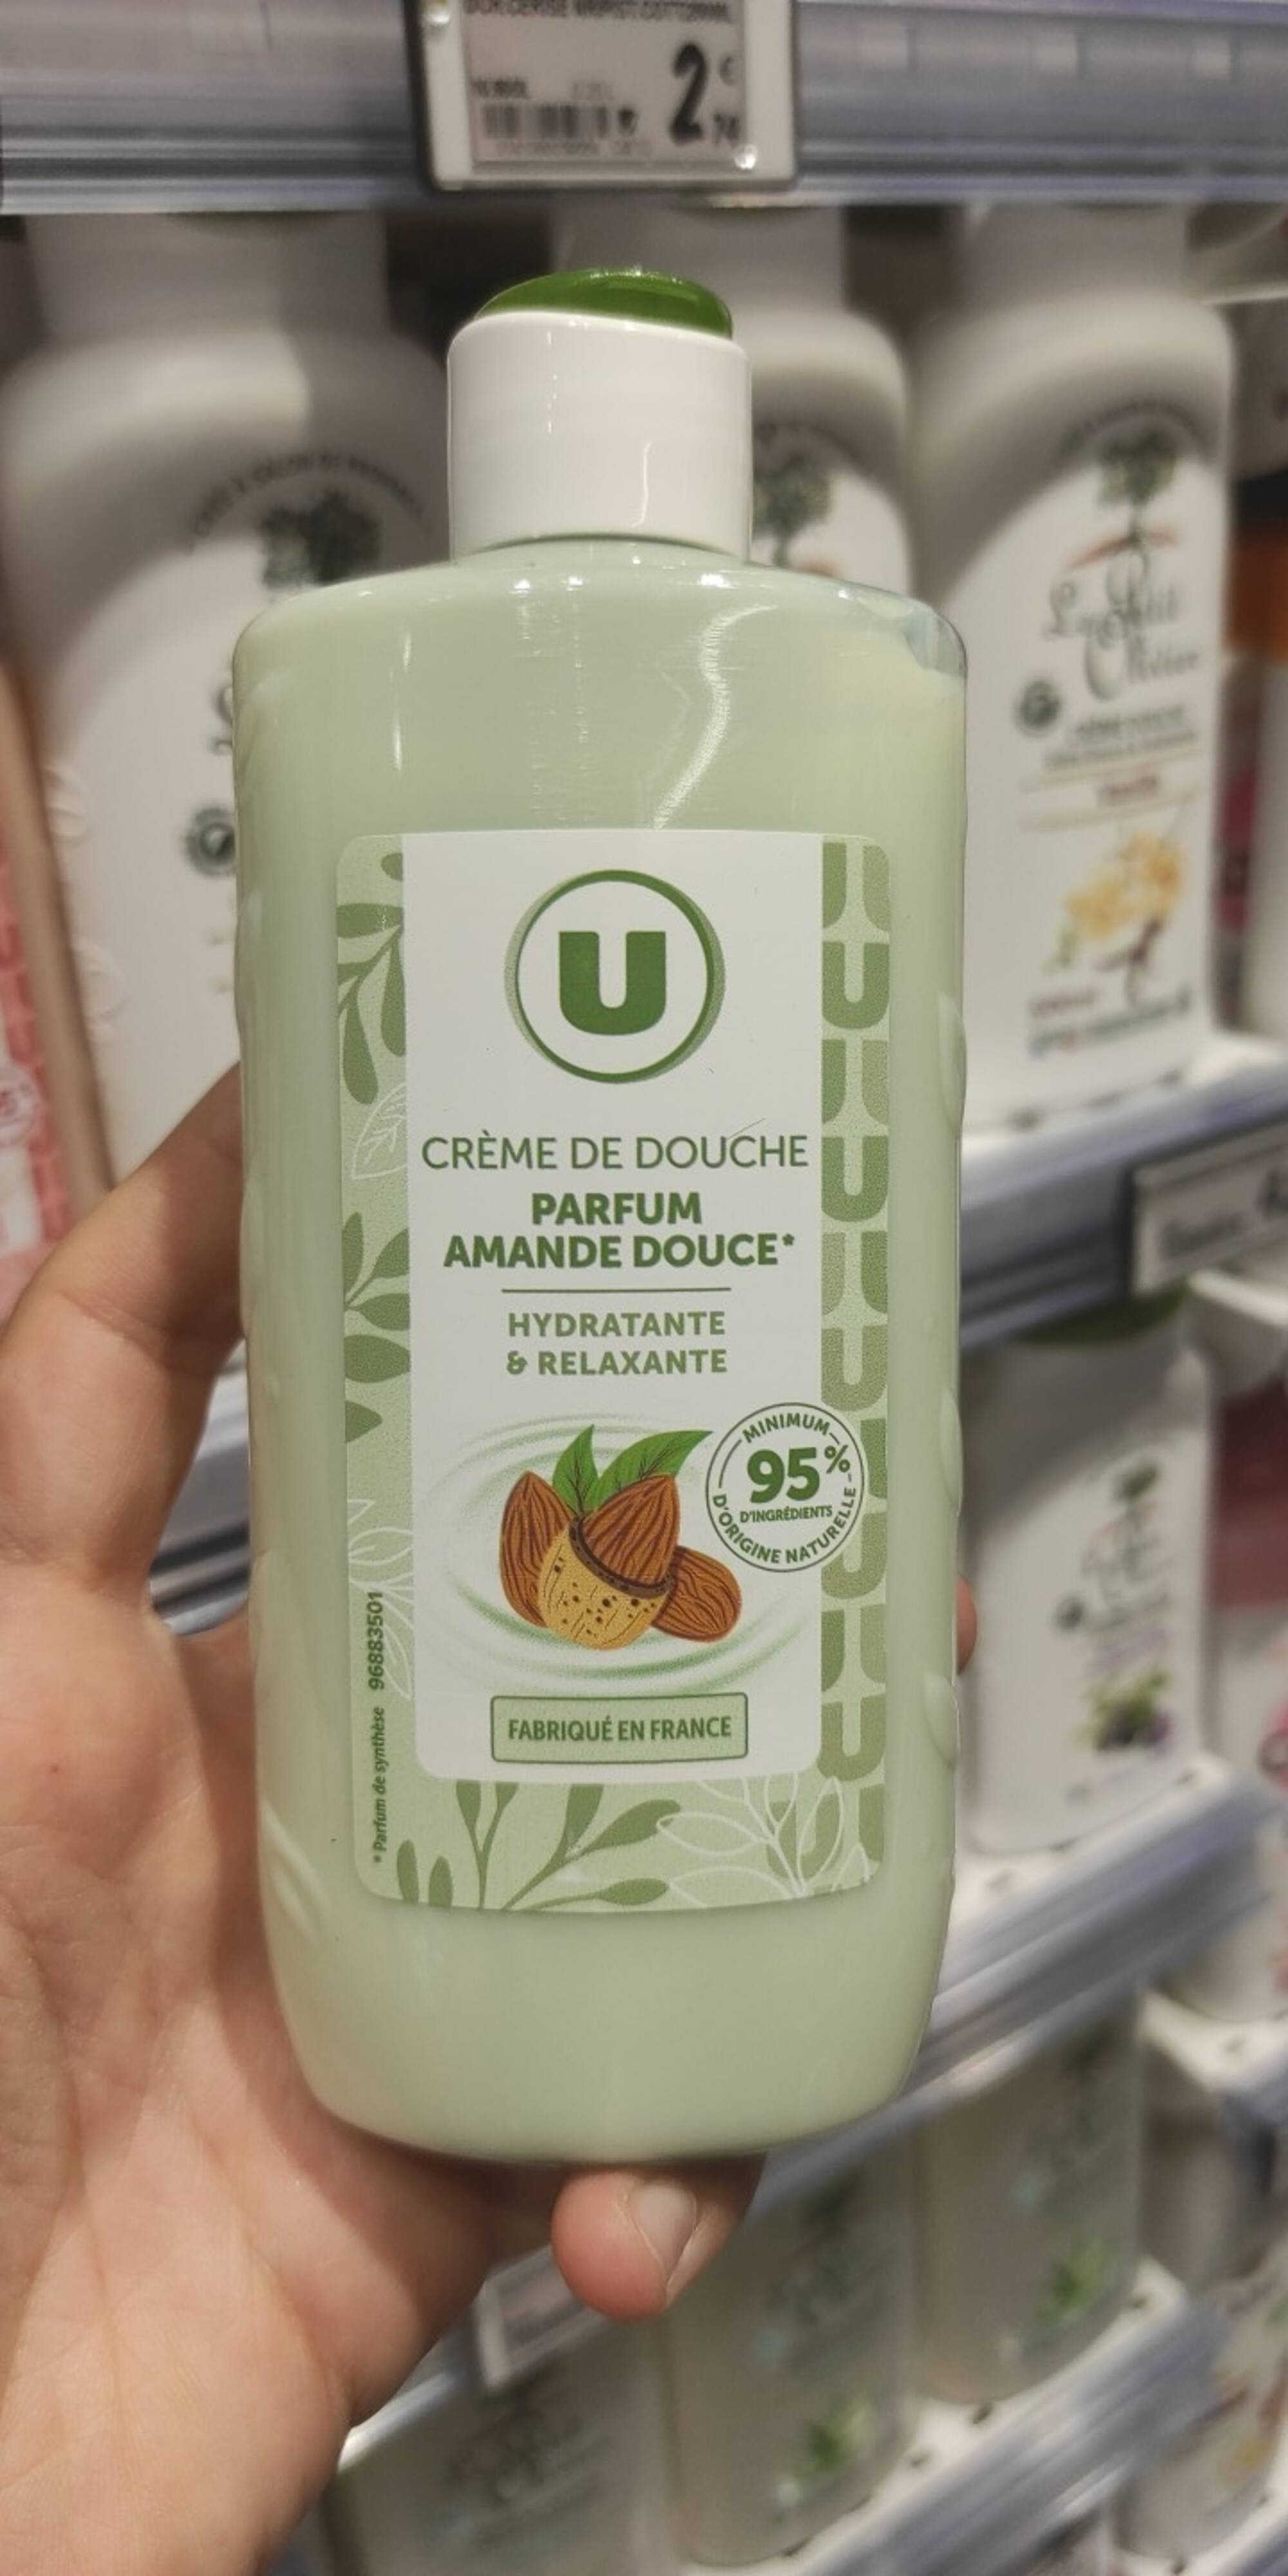 U - Amande douce - Crème de douche